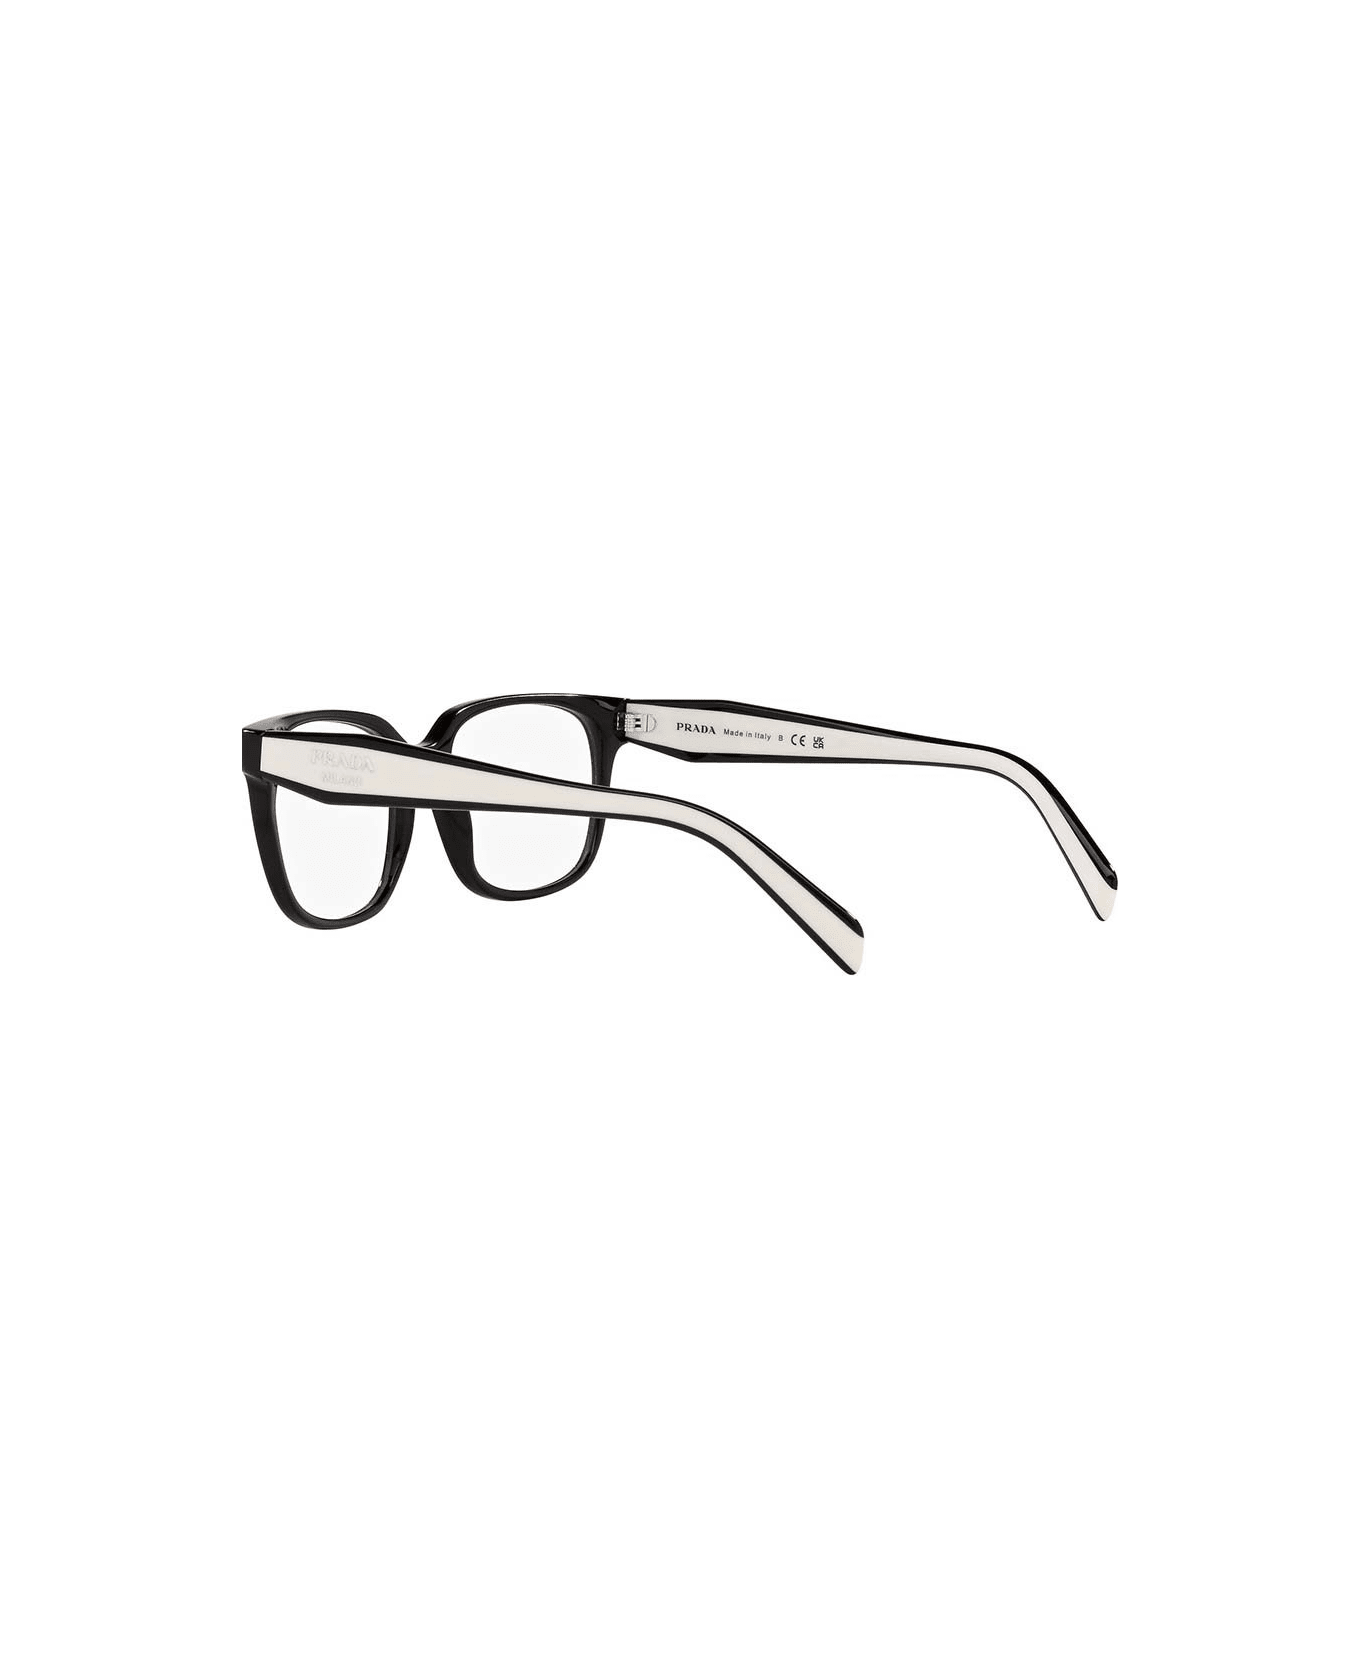 Prada Eyewear Vista Frame - 1AB1O1 アイウェア